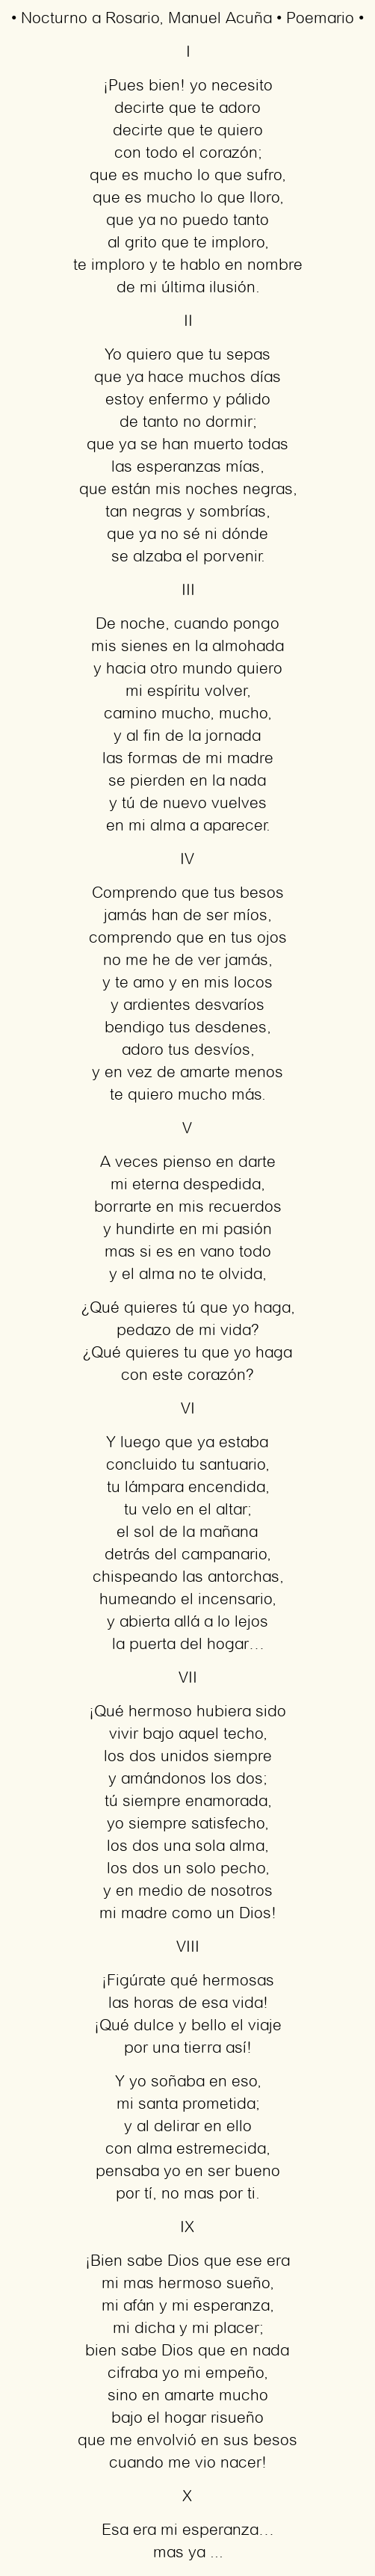 El encanto nocturno de Manuel Acuña: Poemas para soñar